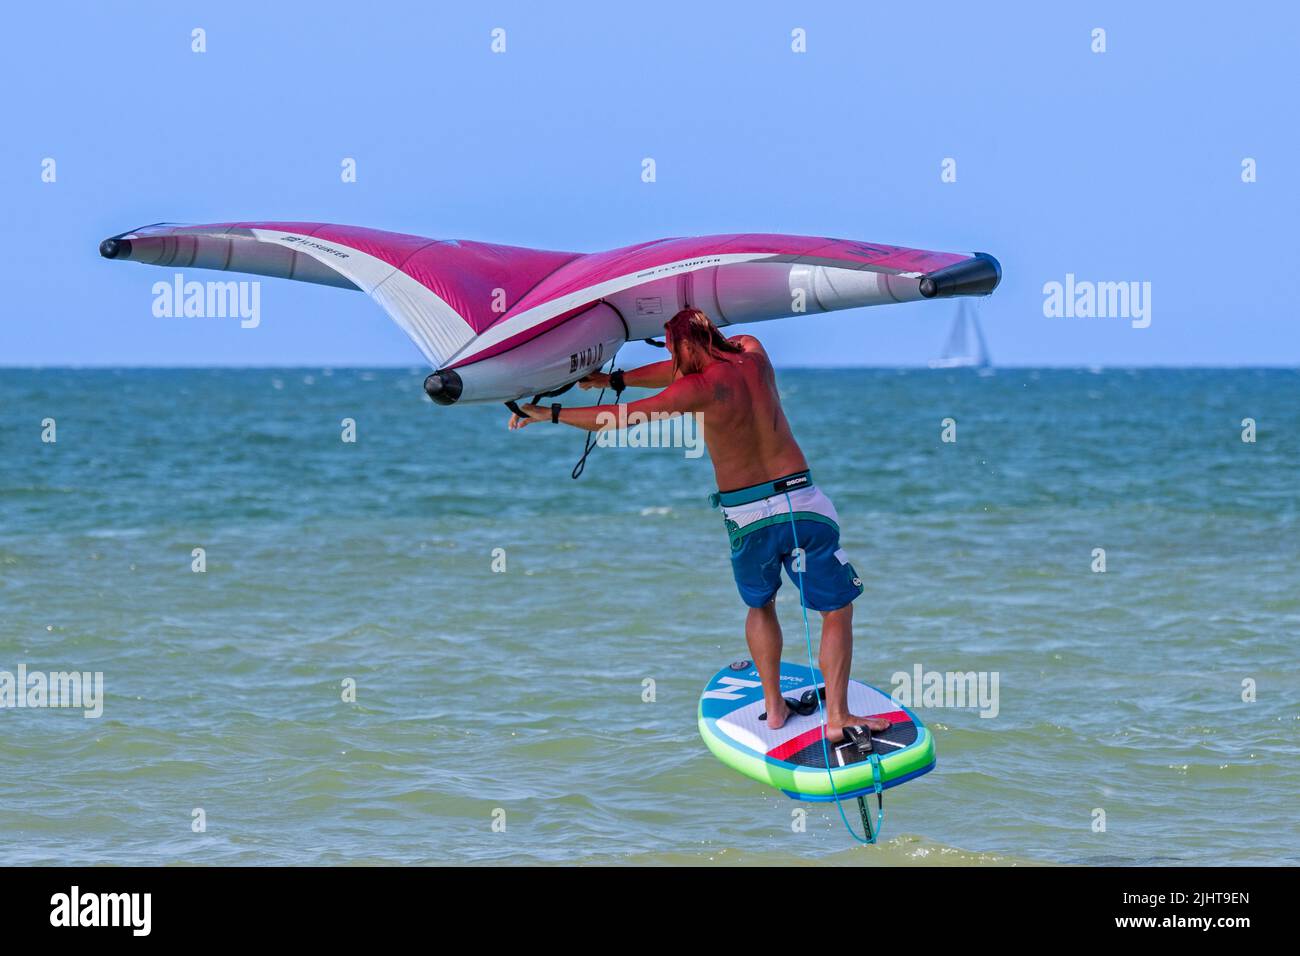 Wing Foiling / Wing Surfing an der Nordsee zeigt Wingboarder / Wing Boarder stehen auf Foilboard / Tragflügelbrett und halten einen aufblasbaren Flügel Stockfoto